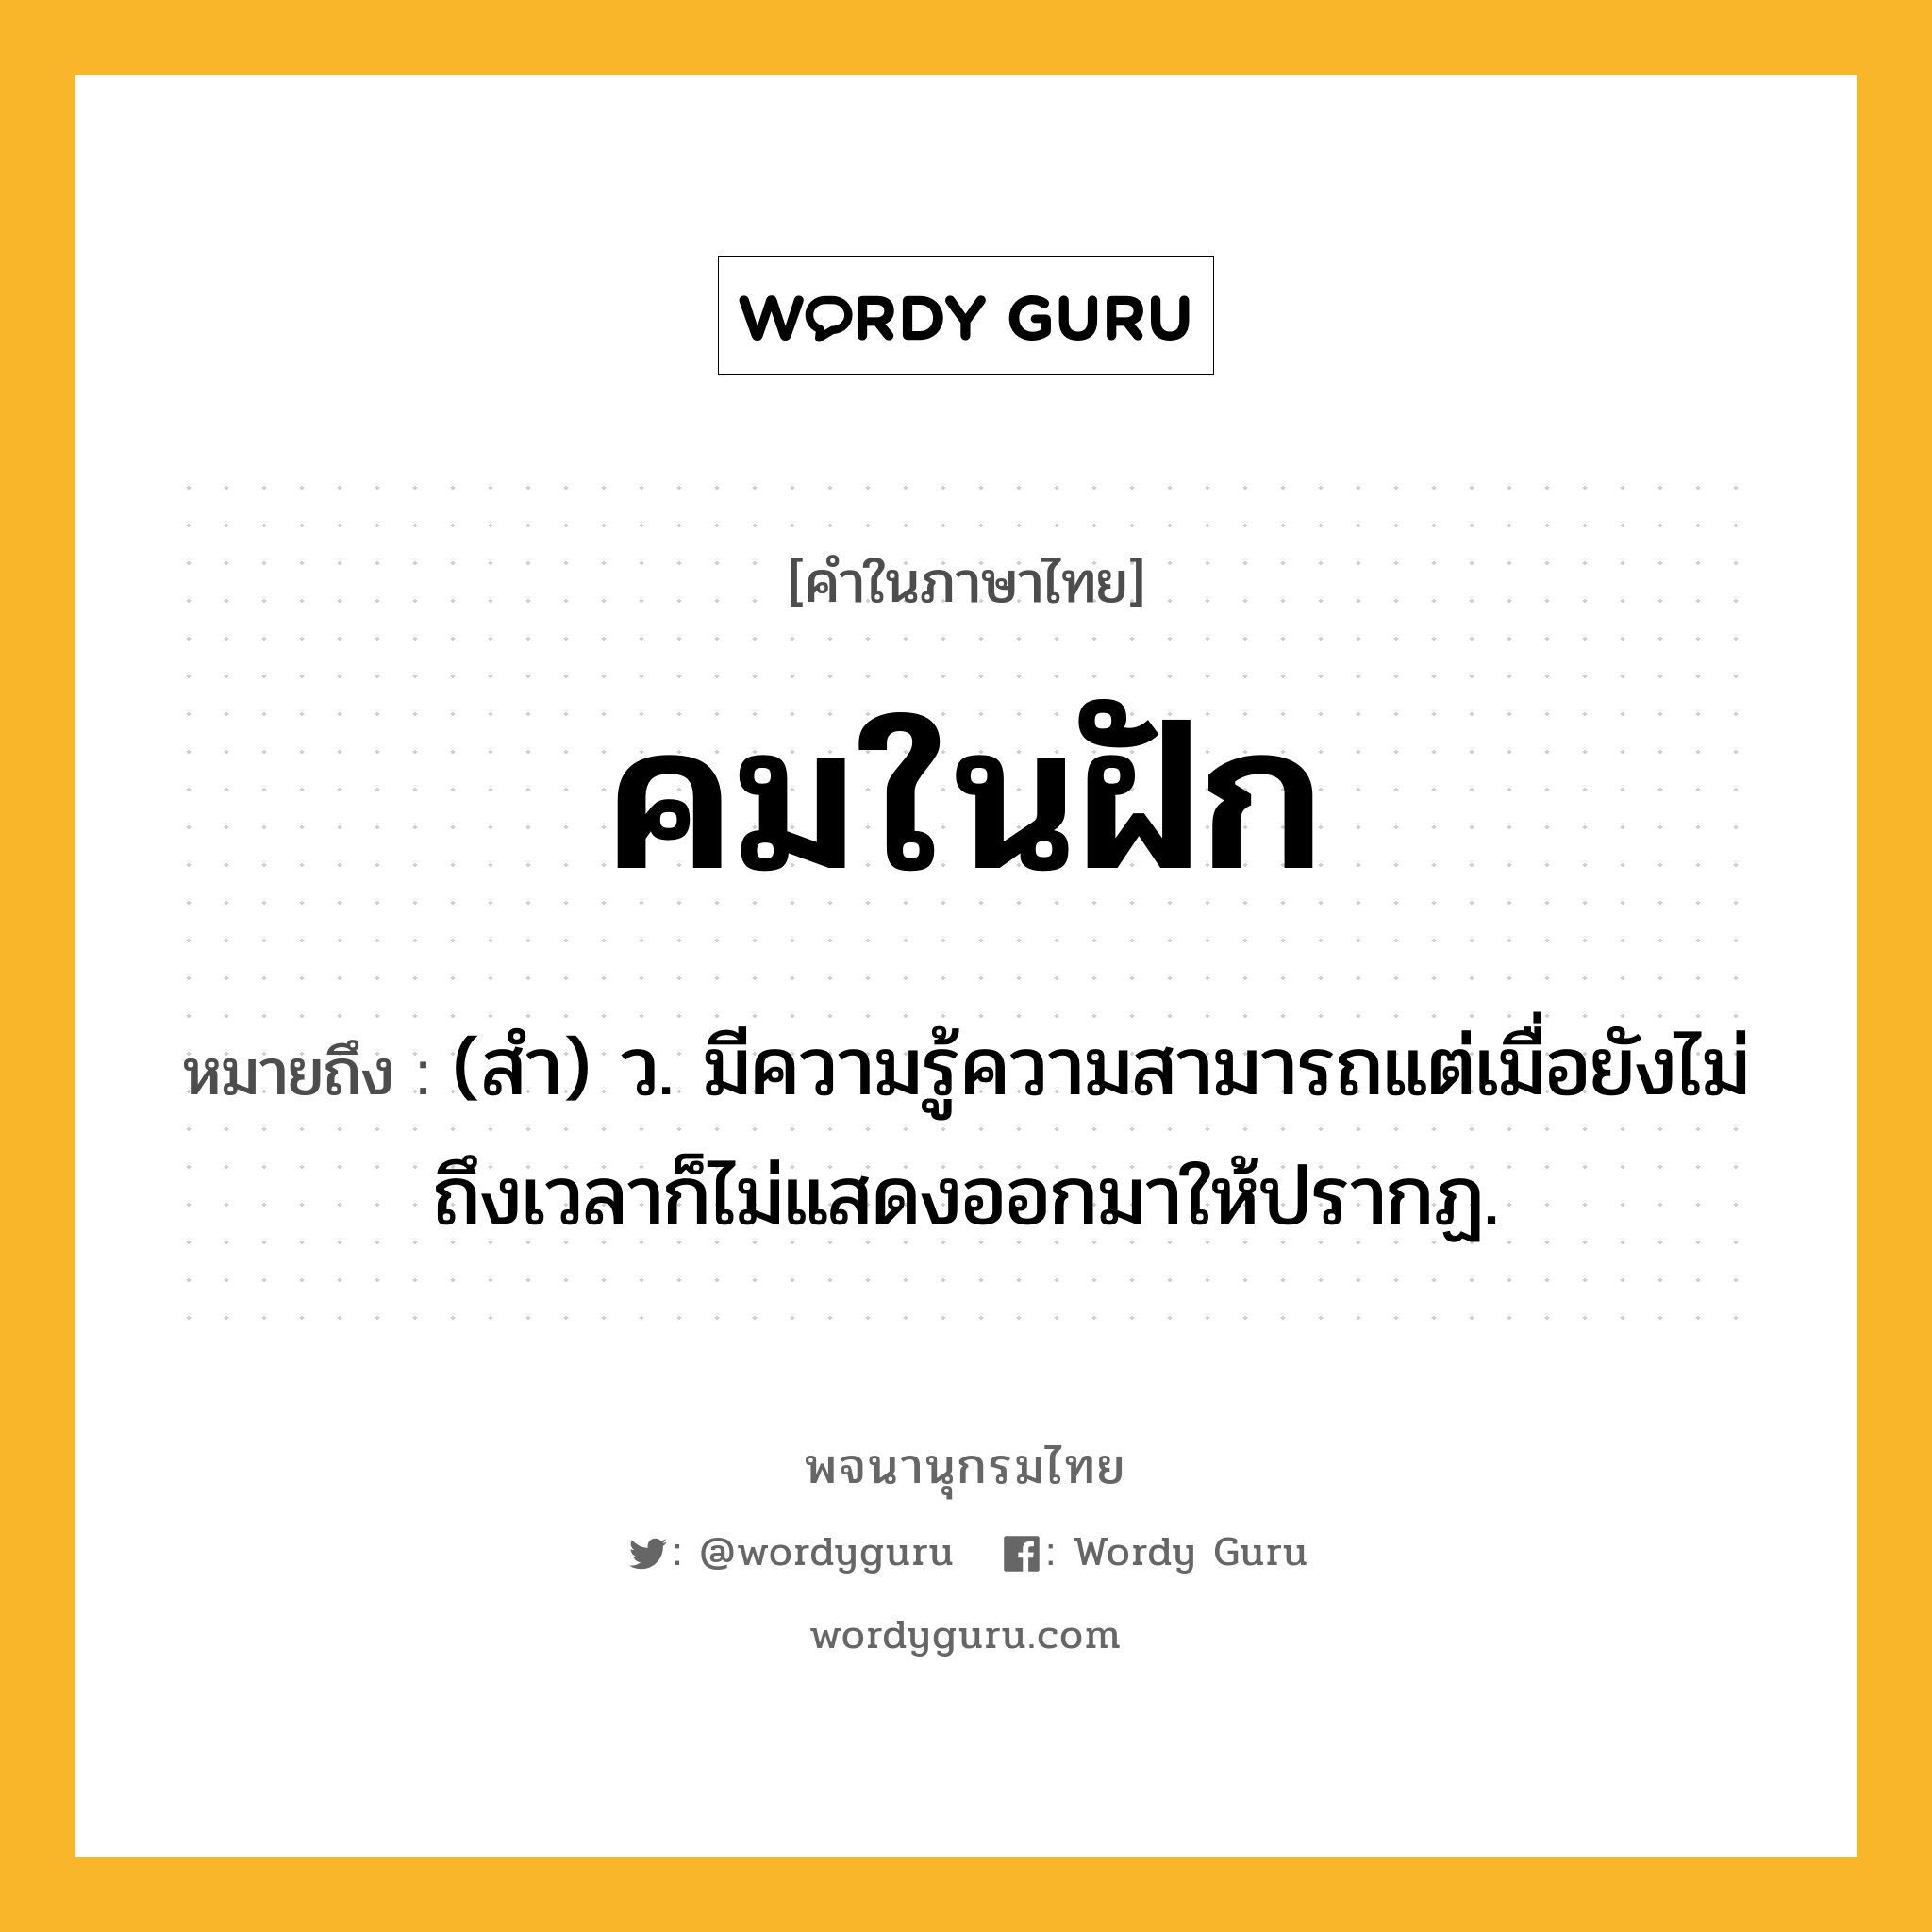 คมในฝัก ความหมาย หมายถึงอะไร?, คำในภาษาไทย คมในฝัก หมายถึง (สํา) ว. มีความรู้ความสามารถแต่เมื่อยังไม่ถึงเวลาก็ไม่แสดงออกมาให้ปรากฏ.